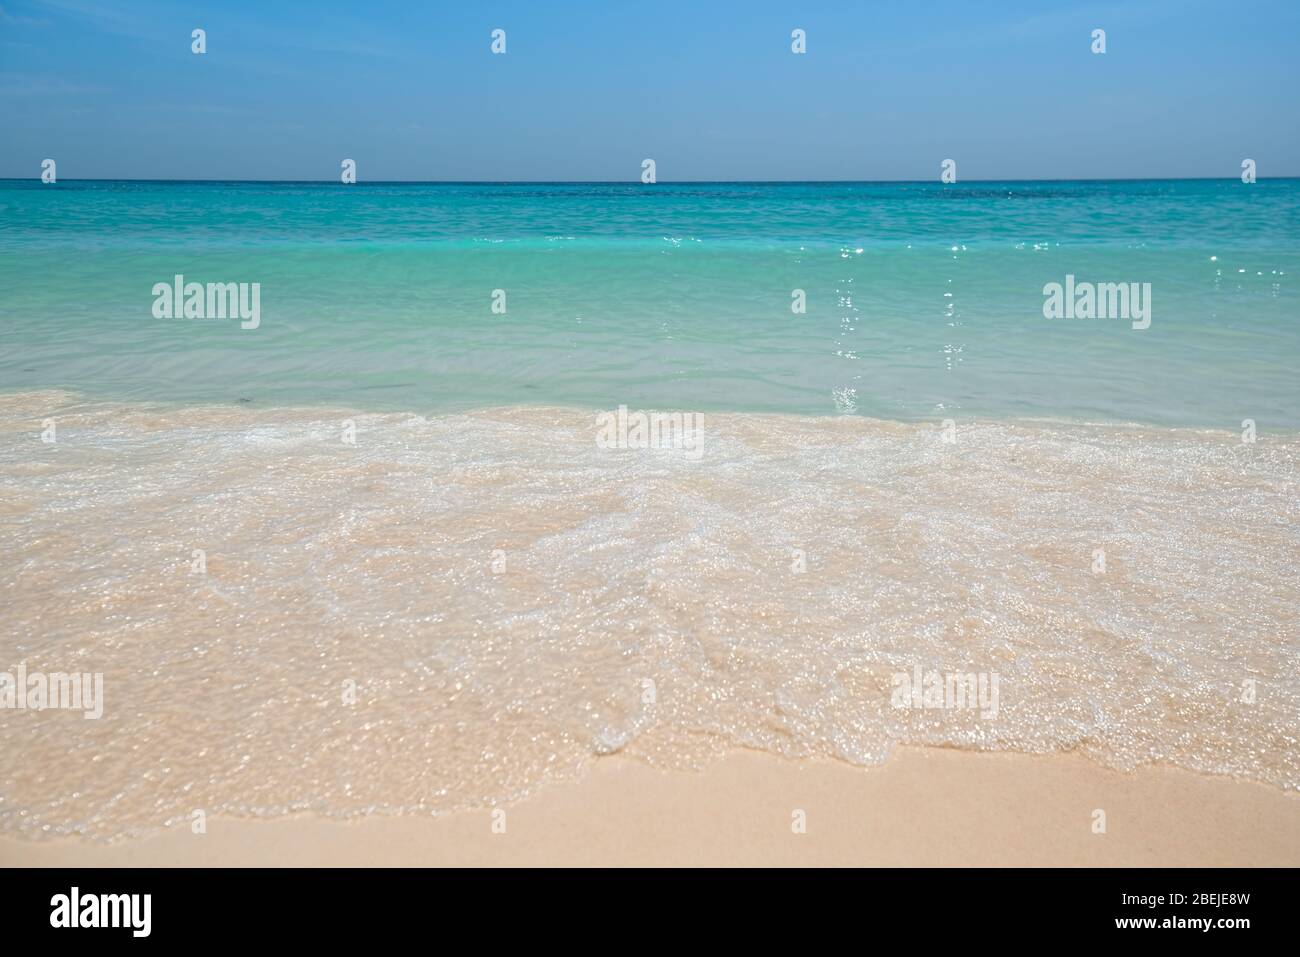 Mare tropicale con bella acqua acquamarina e onda di schiuma bianca che si rompe su spiaggia di sabbia fine giallo. Fondo marino. Thailandia Foto Stock